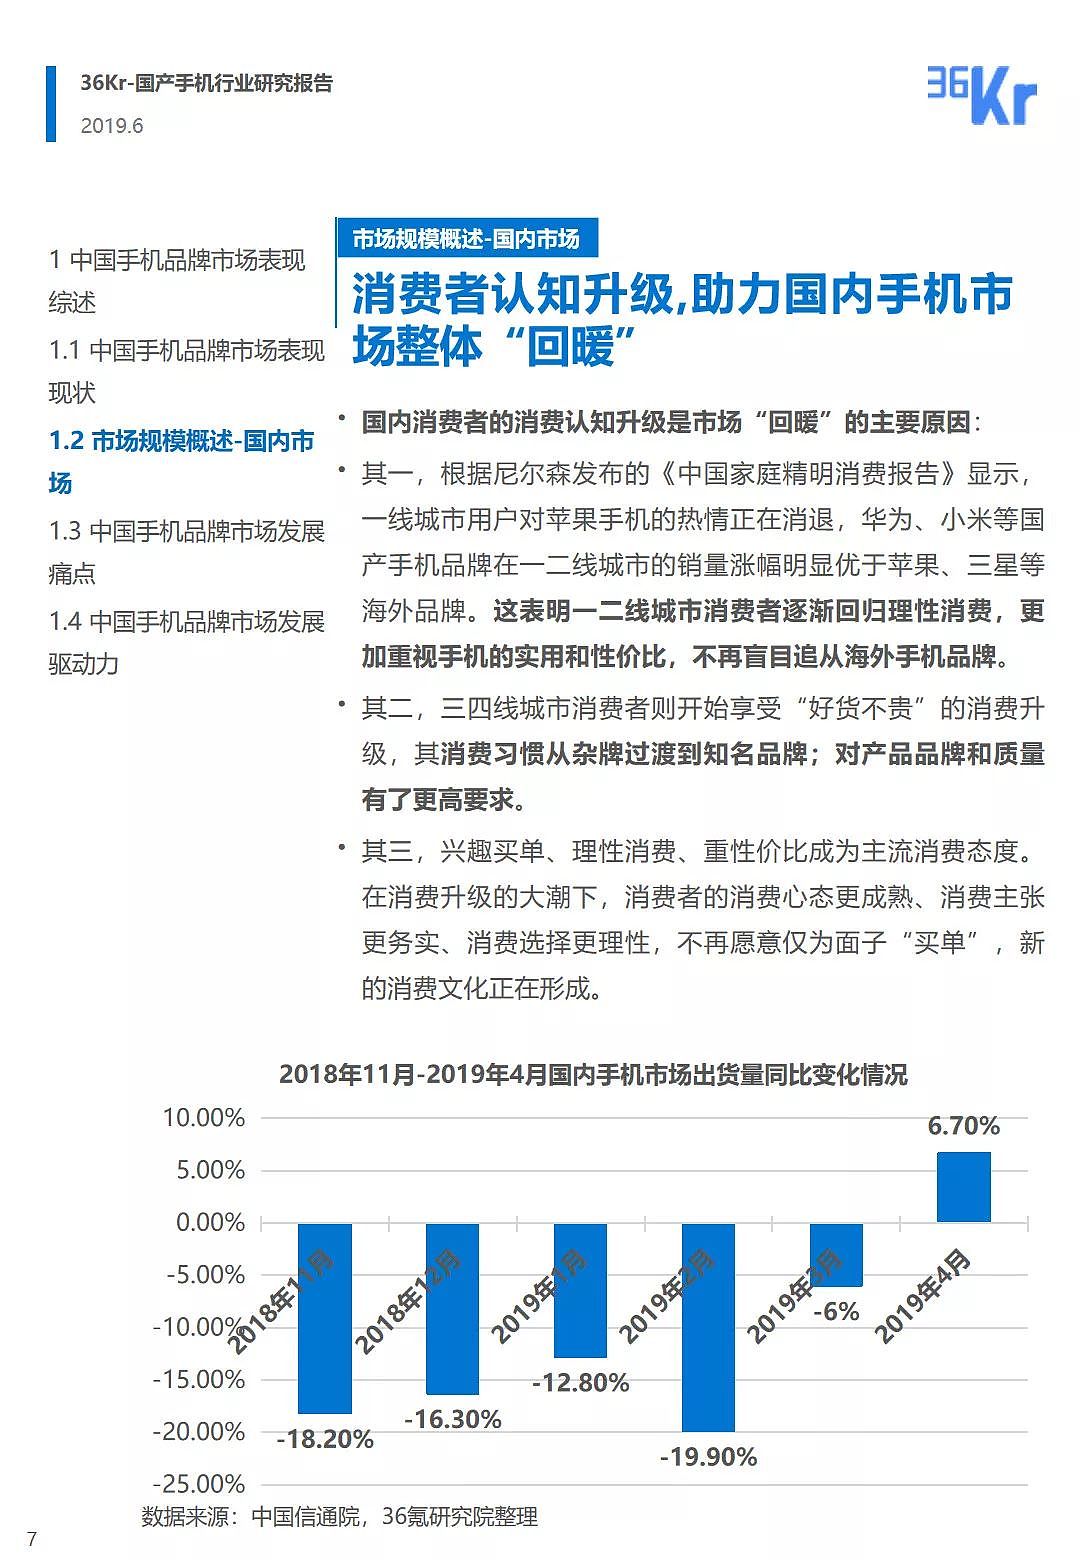 中国手机品牌市场营销研究报告 | 36氪研究 - 8